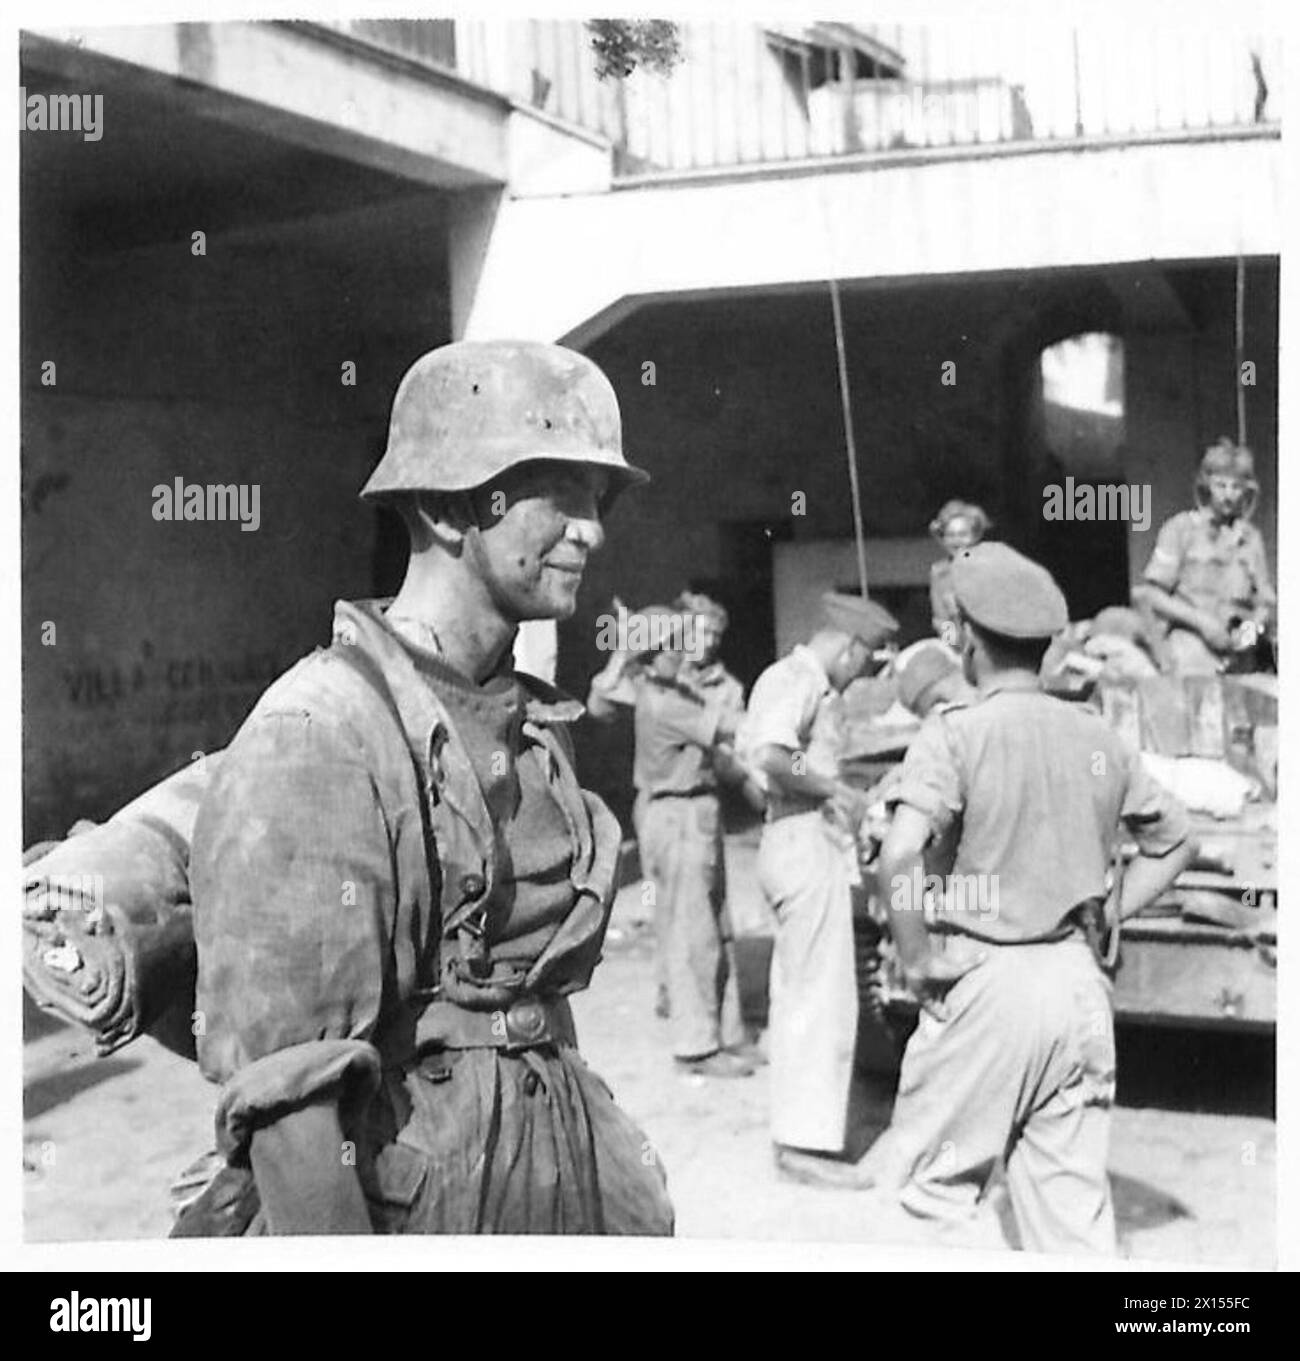 DIE EROBERUNG DER STADT SCAFATI DURCH MÄNNER DES REGT DER KÖNIGIN 1/6 - einer der Gefangenen, die in der Stadt gefangen genommen wurden, ein typisches Mitglied der Hermann Goering Division British Army Stockfoto